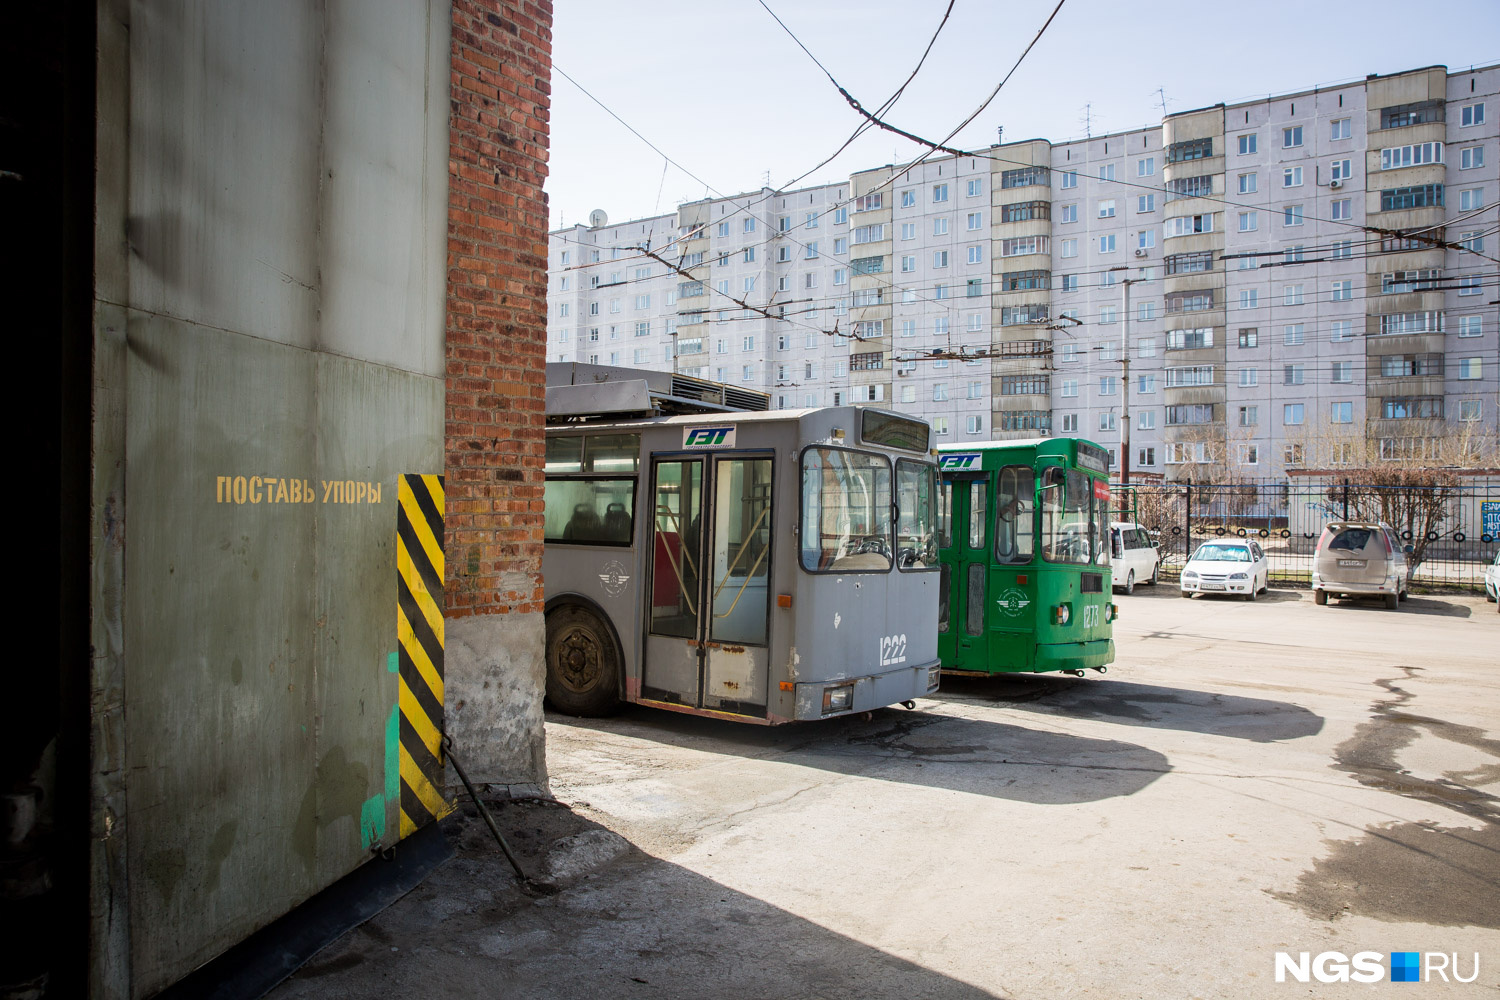 Сегодня в Новосибирске на линию выходят 284 троллейбуса и 129 трамваев<br>